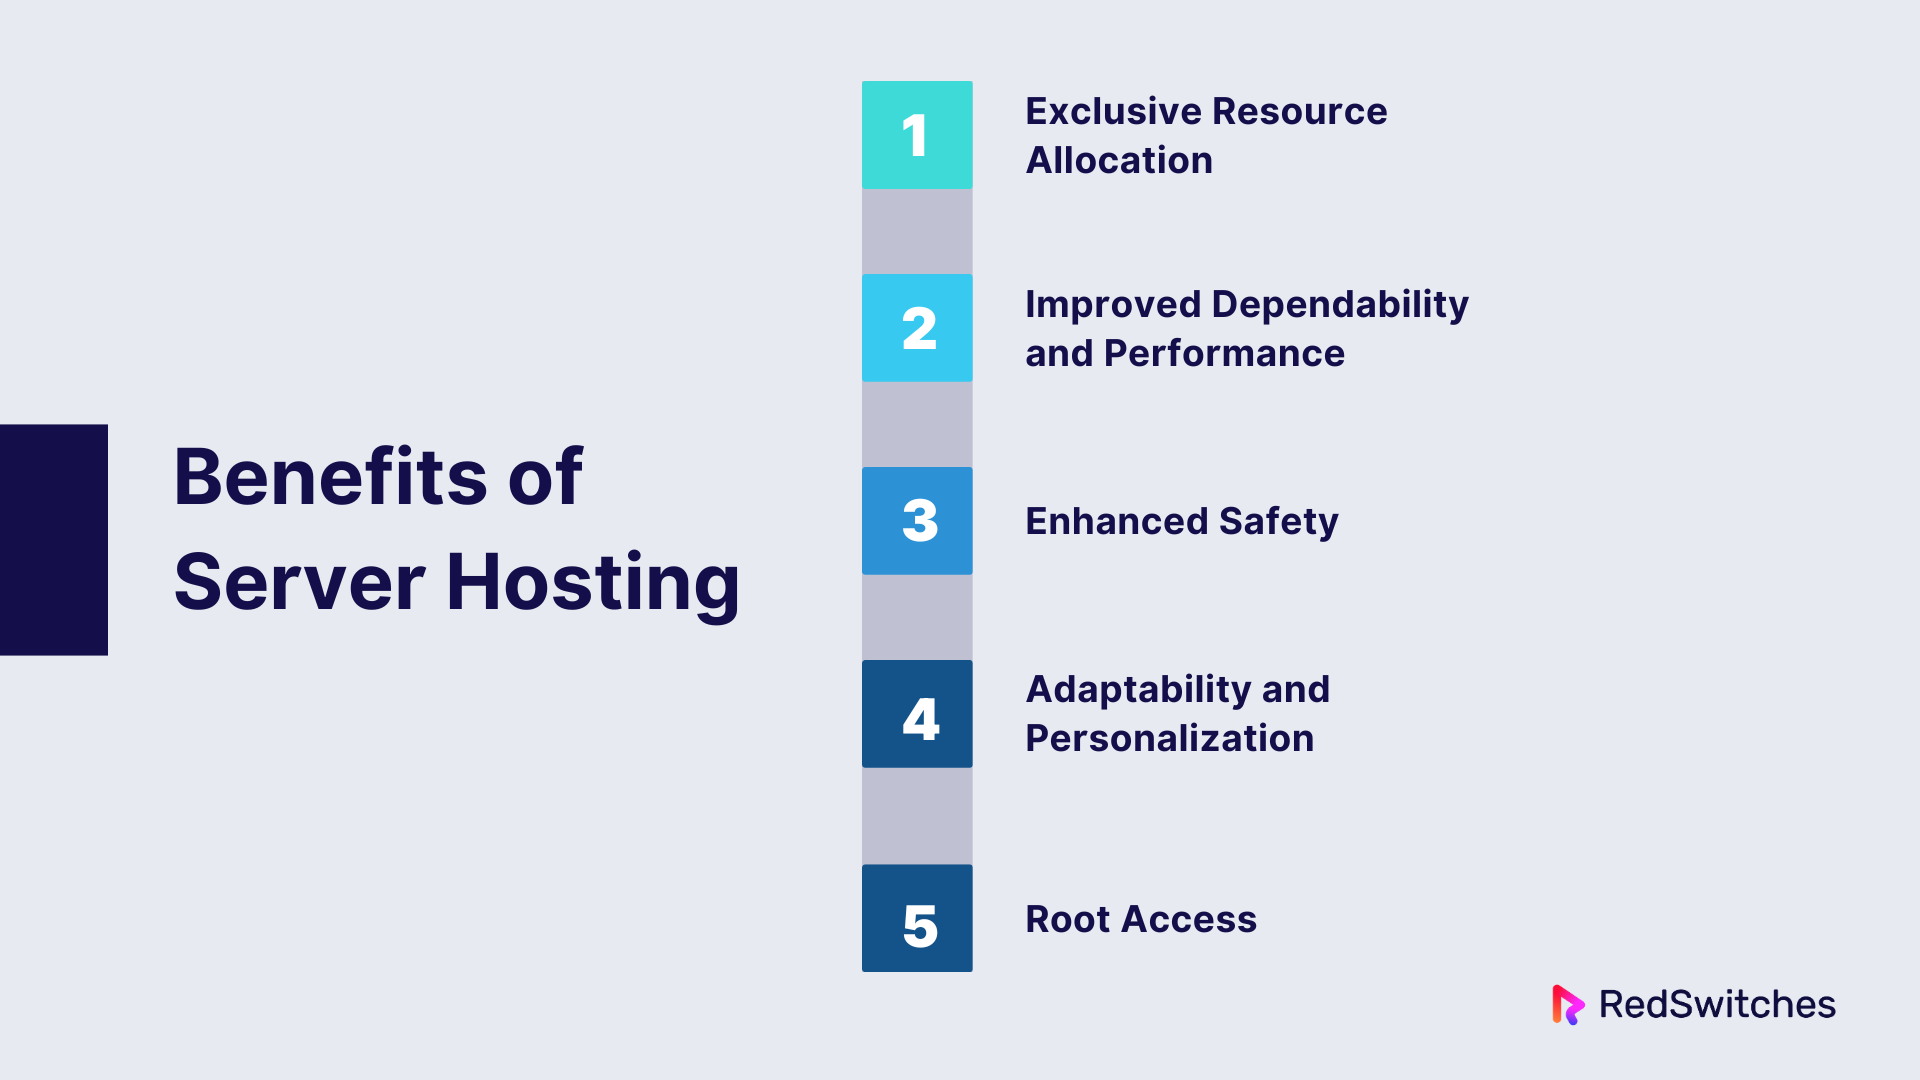 Benefits of Server Hosting